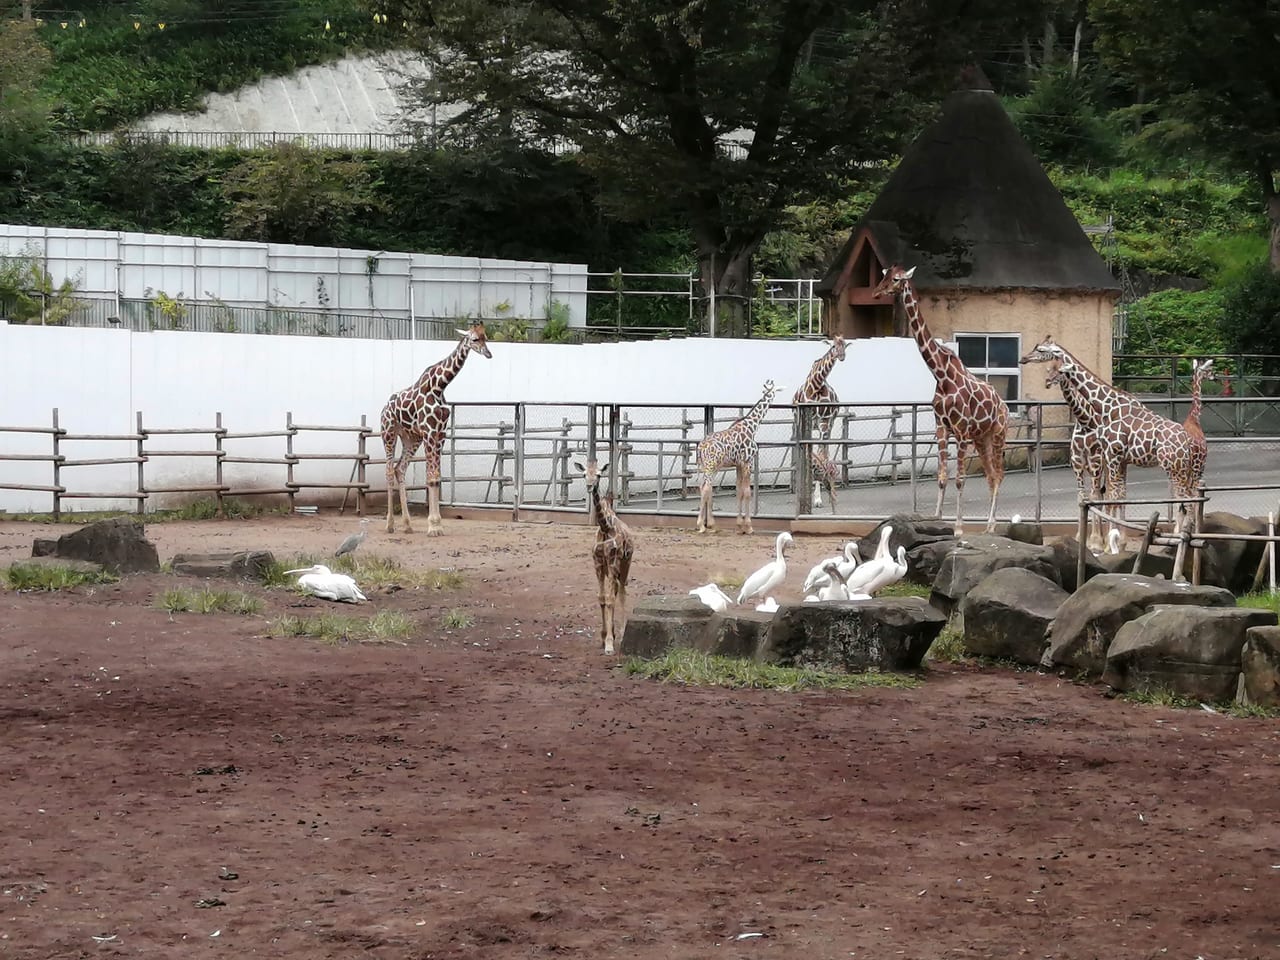 日野市 多摩動物公園でキリンの赤ちゃんが見られますよ 親子で並んで歩く姿がかわいい 号外net 日野市